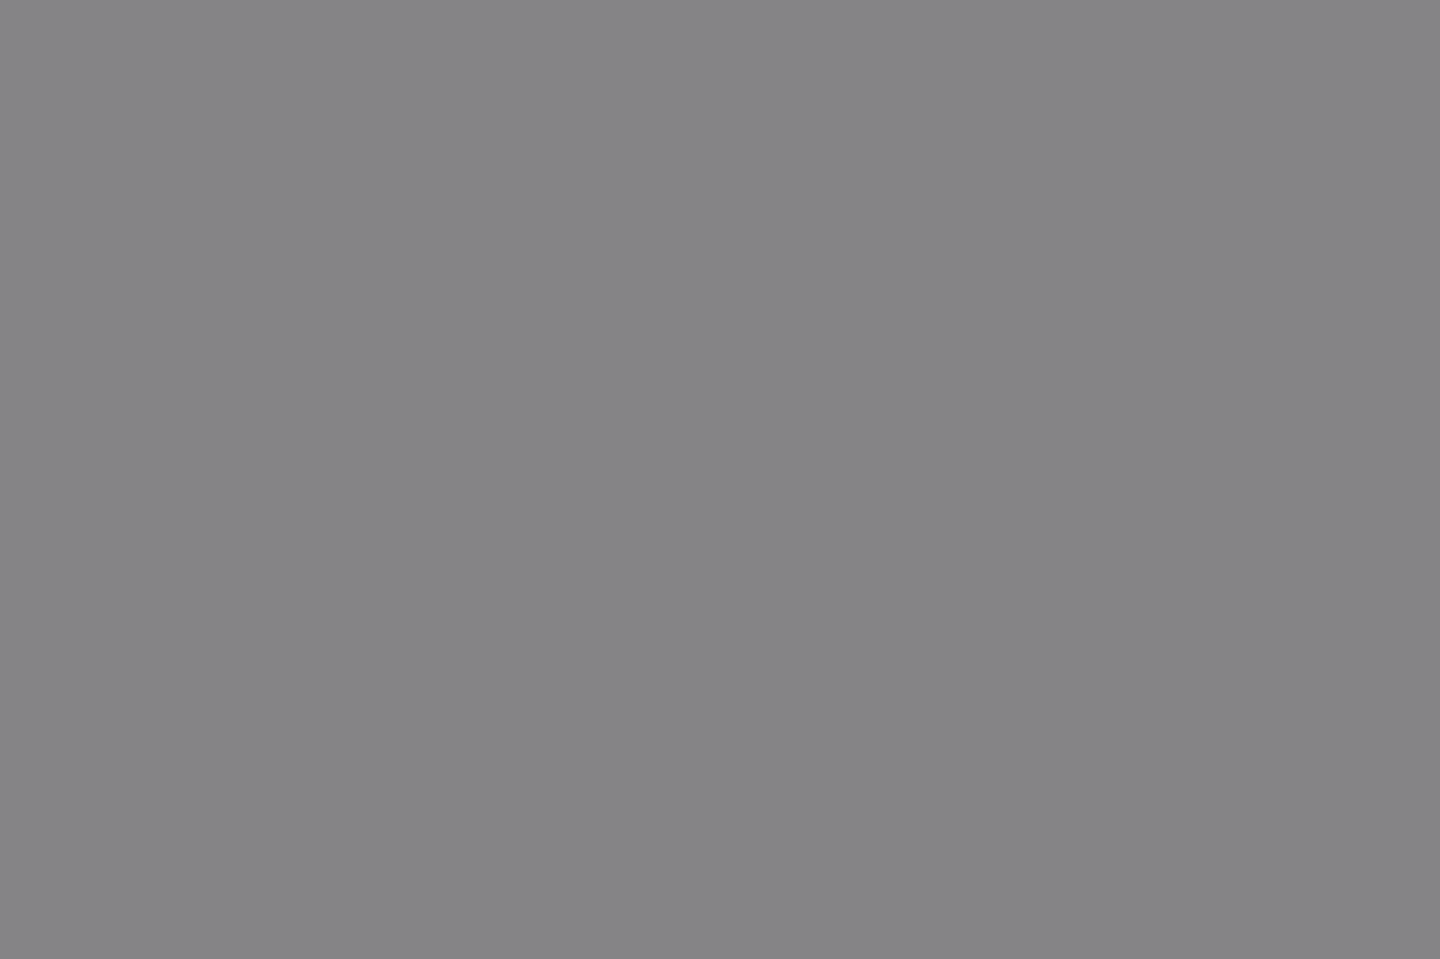 Музей художественного освоения Арктики имени А.А. Борисова, Архангельск. Фотография: rus-arc.ru